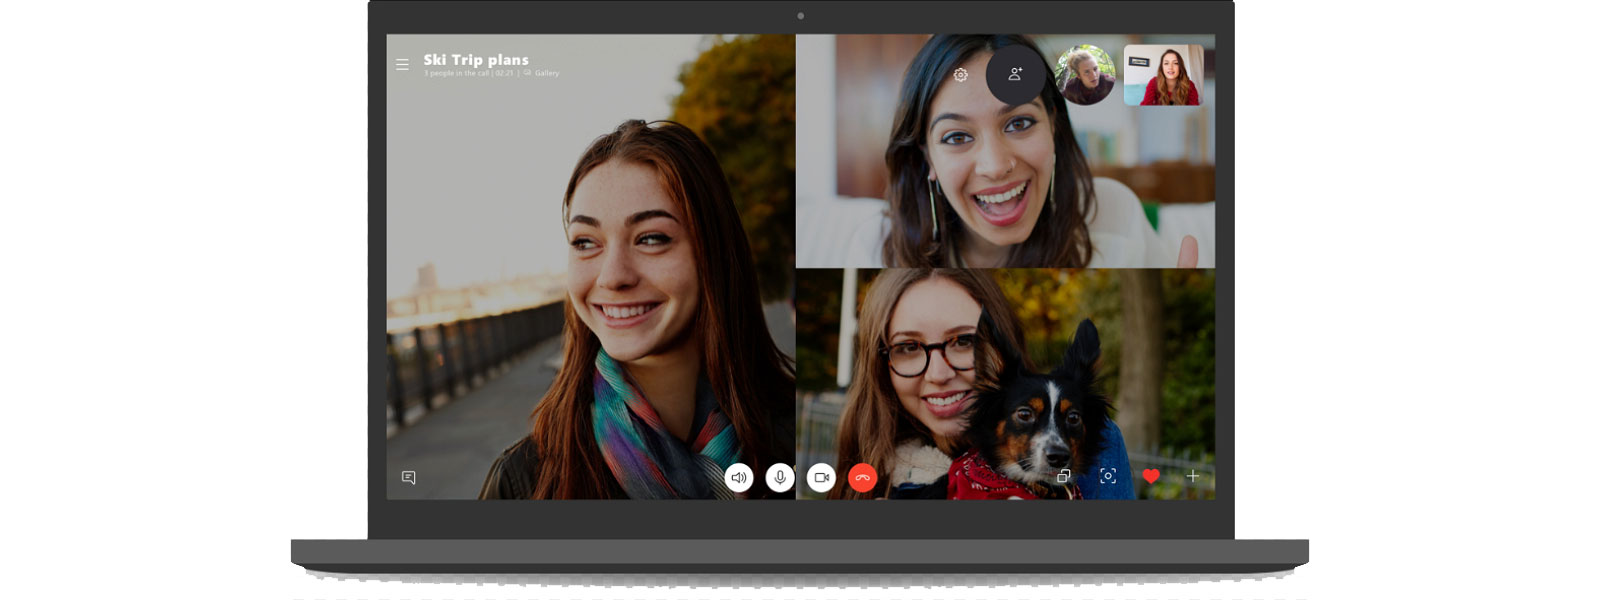 Skype est un logiciel gratuit permettant de lancer une conversation à plusieurs. © Microsoft